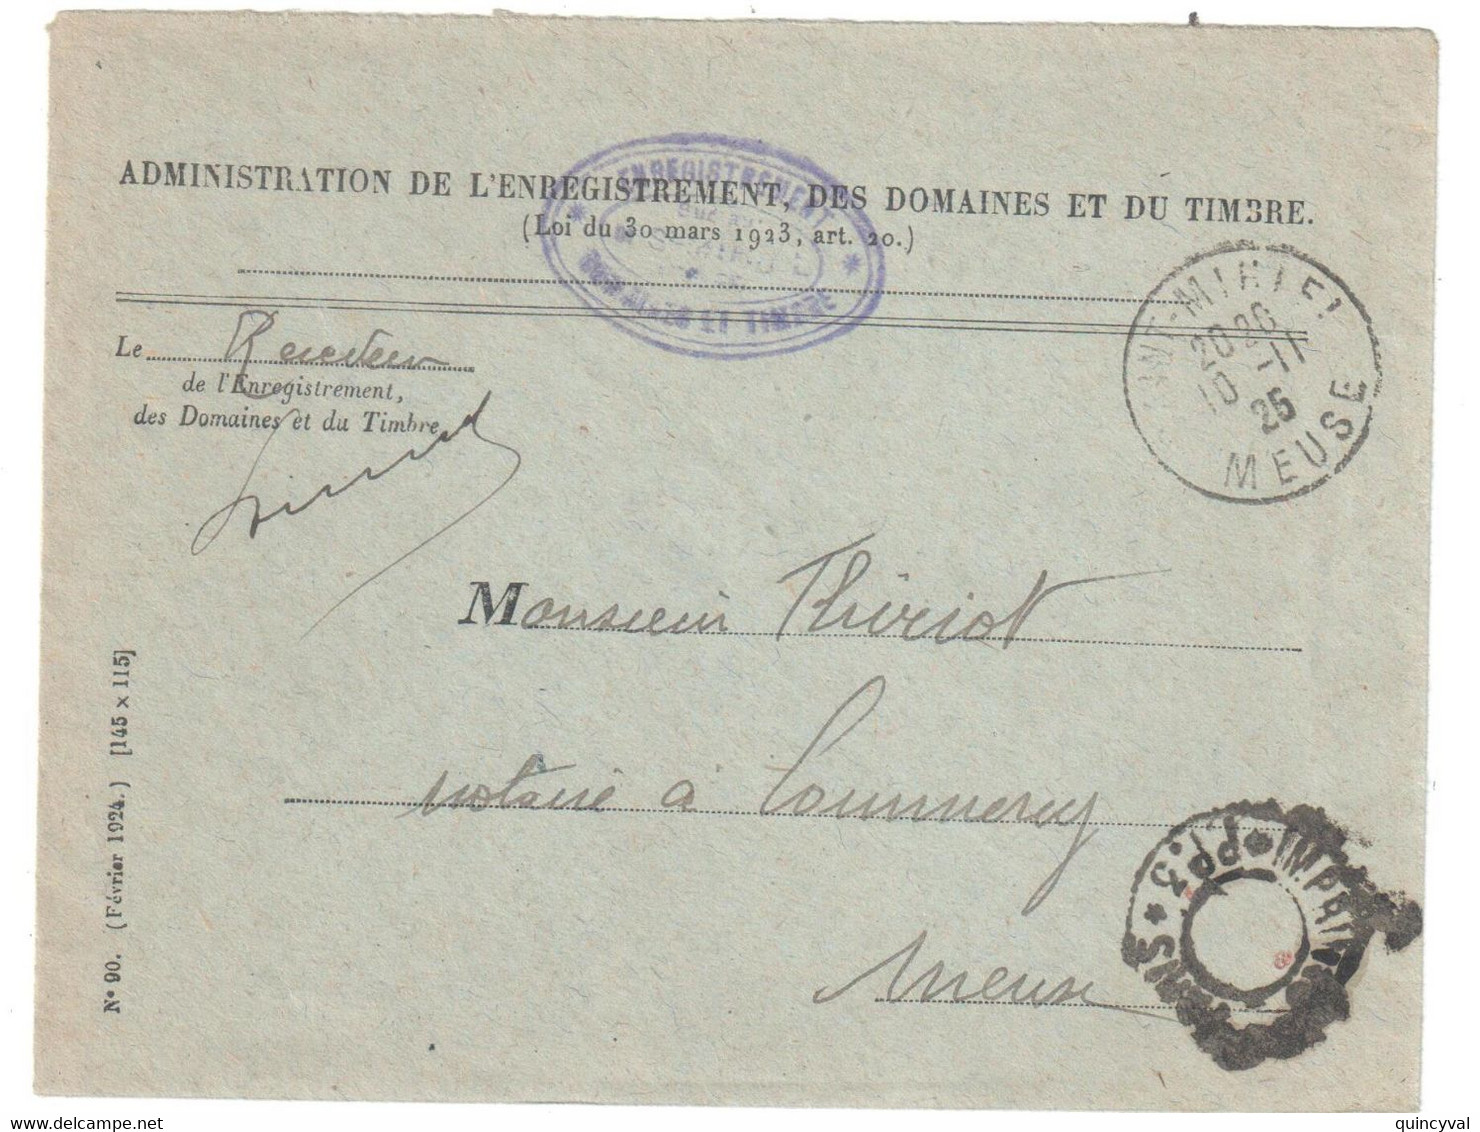 St MIHIEL Meuse Lettre Franchise Entête 1925 Enregistrement Domaines Timbres Dest Commercy Franchise Imprimés Paris PP3 - Frankobriefe